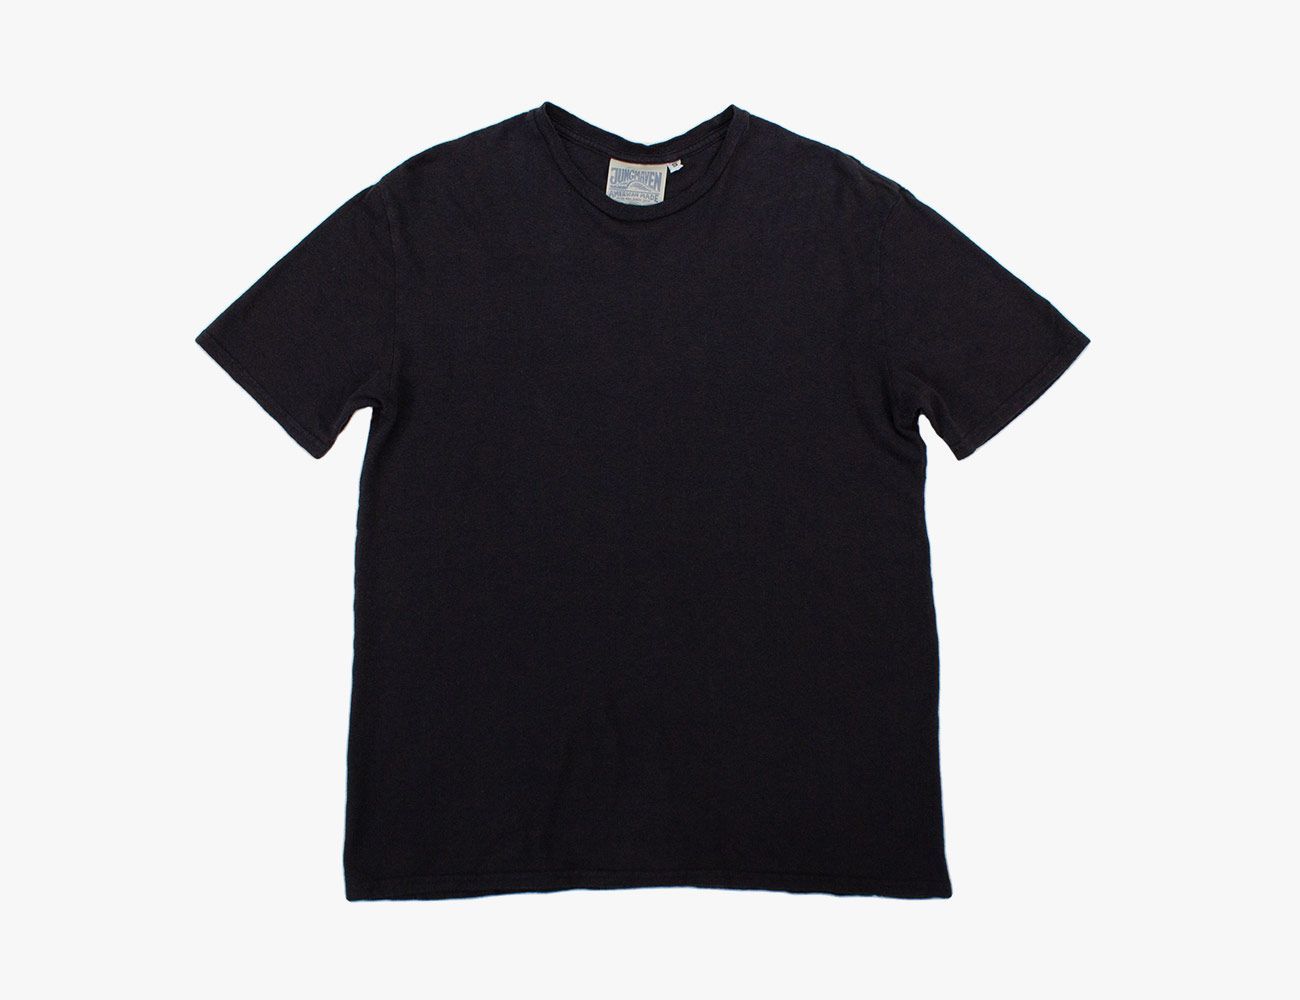 plain black t shirt pics